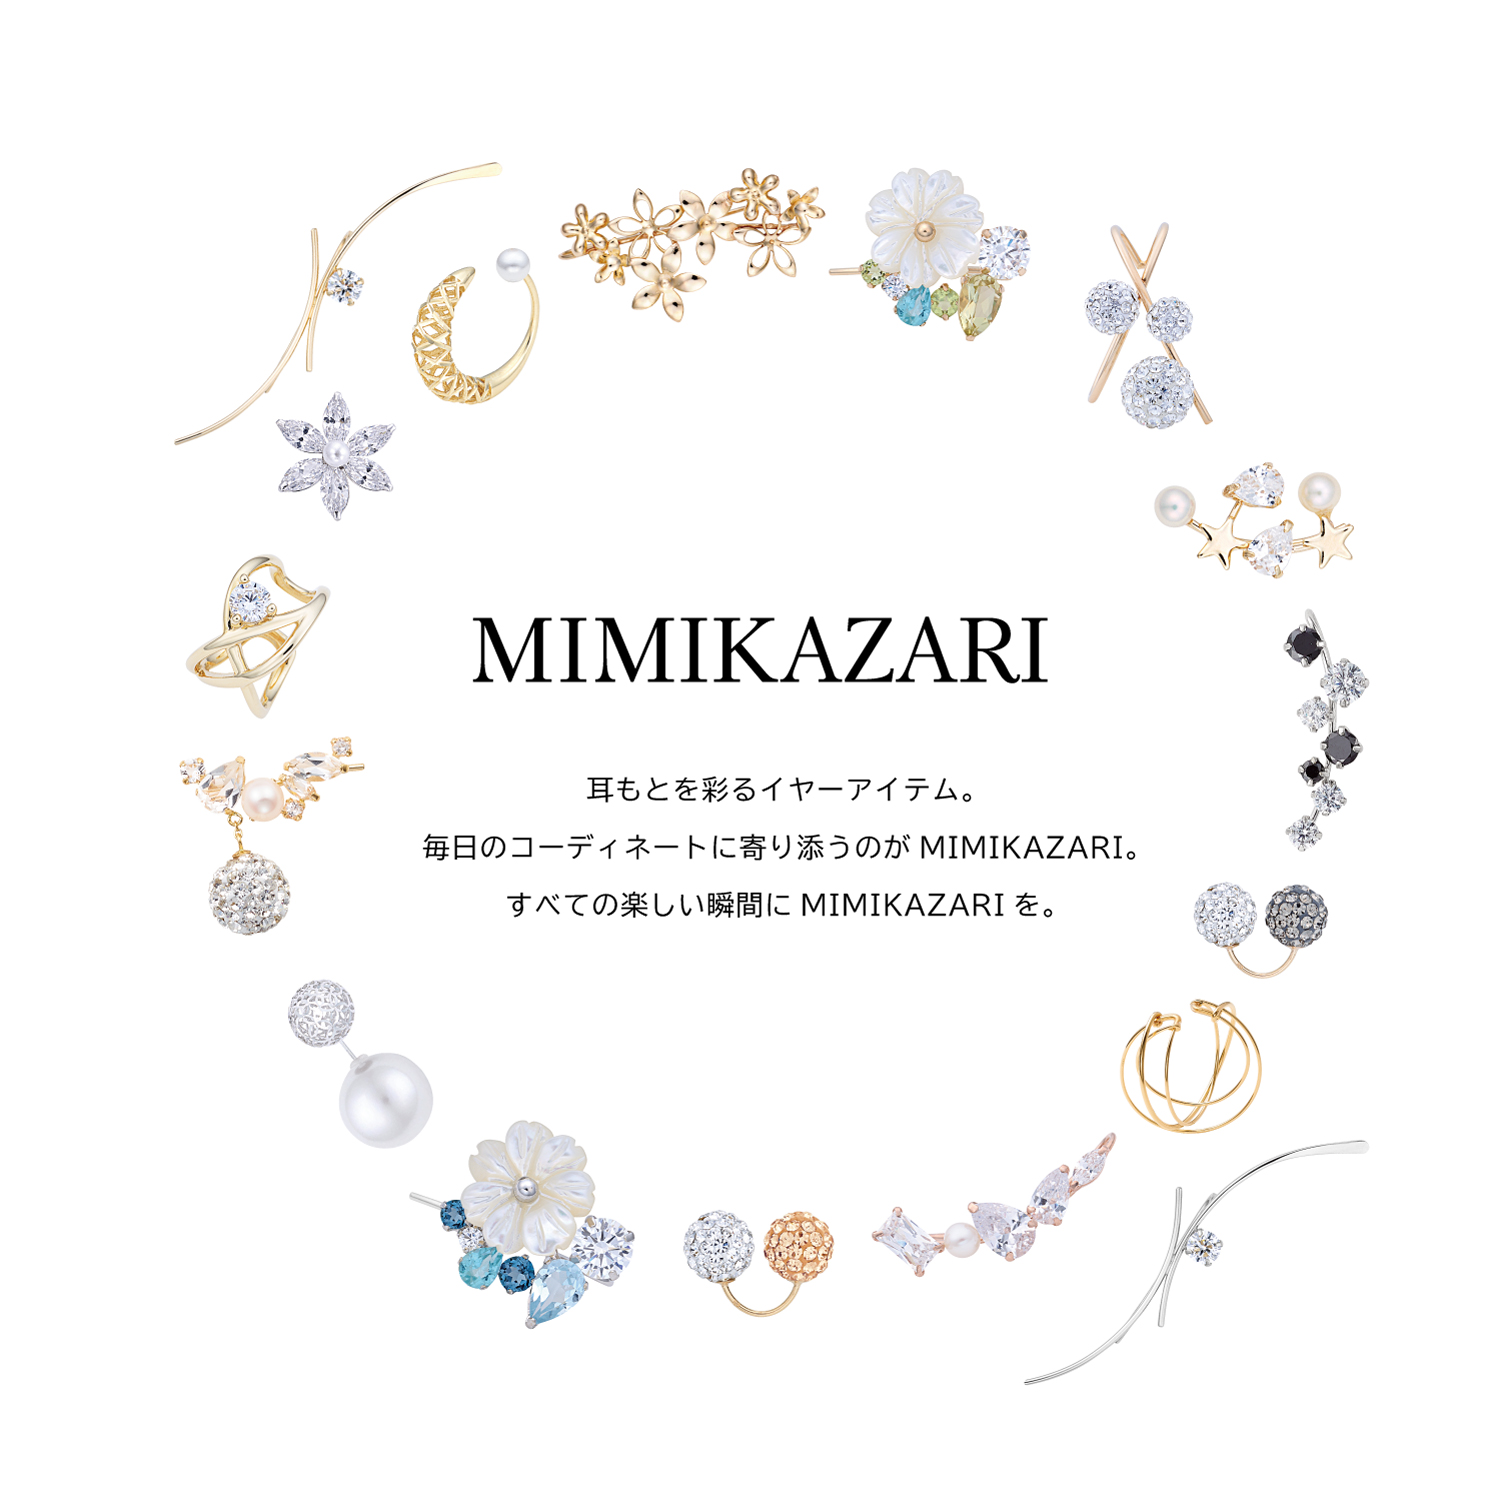 2023.3.29(Thu)~ MIMIKAZARI 阪急うめだ本店 リニューアルOPEN!!